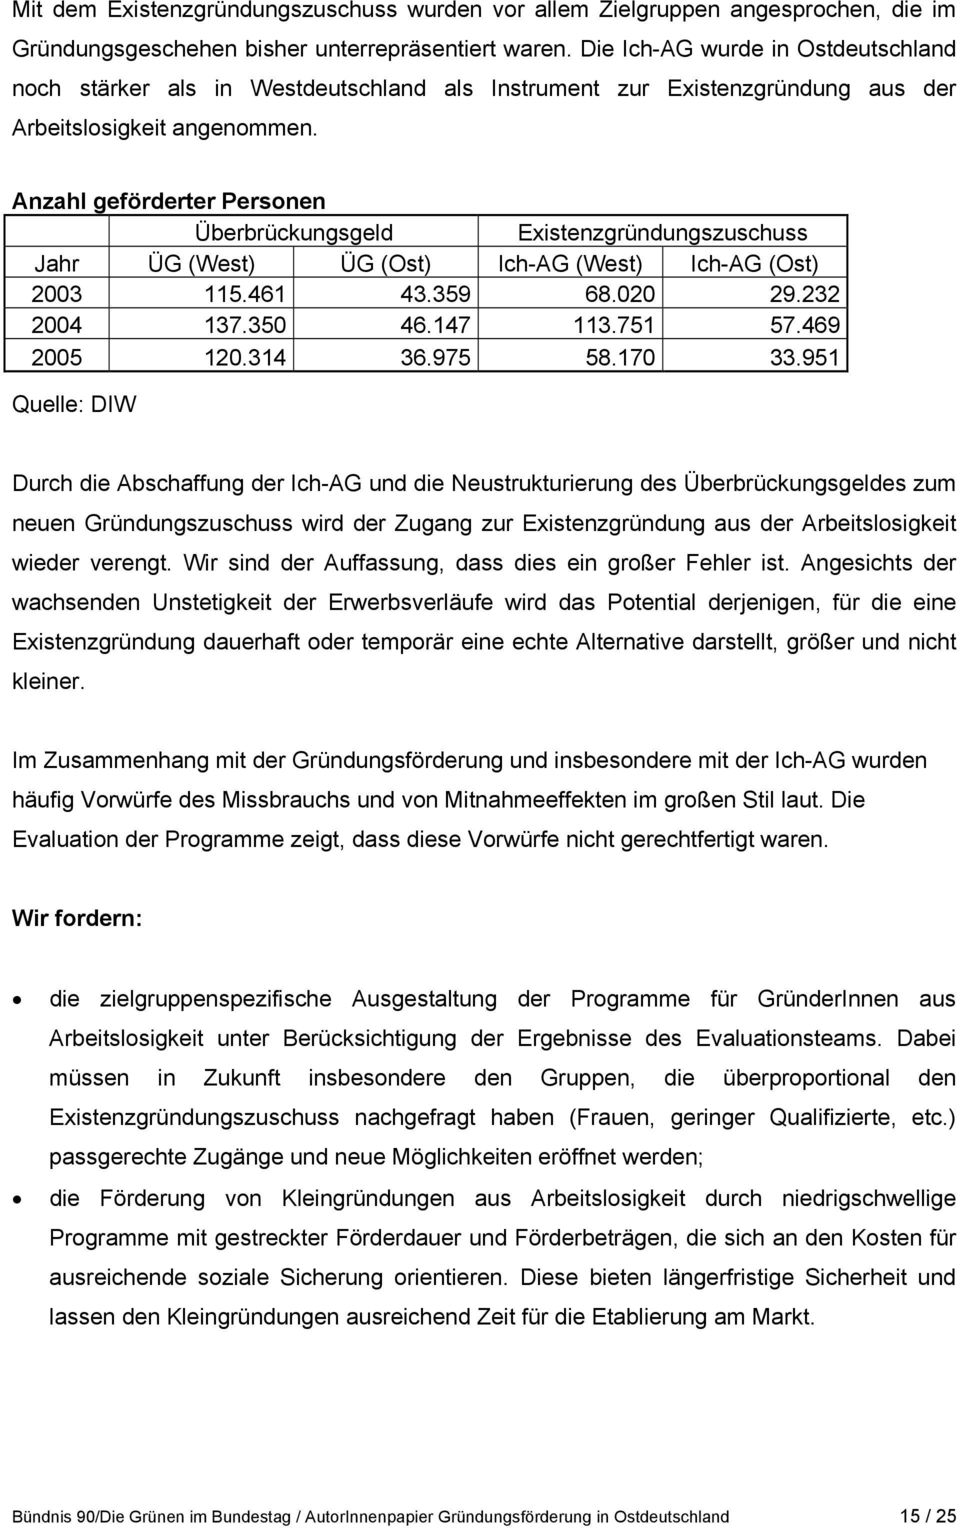 Anzahl geförderter Personen Überbrückungsgeld Existenzgründungszuschuss Jahr ÜG (West) ÜG (Ost) Ich-AG (West) Ich-AG (Ost) 2003 115.461 43.359 68.020 29.232 2004 137.350 46.147 113.751 57.